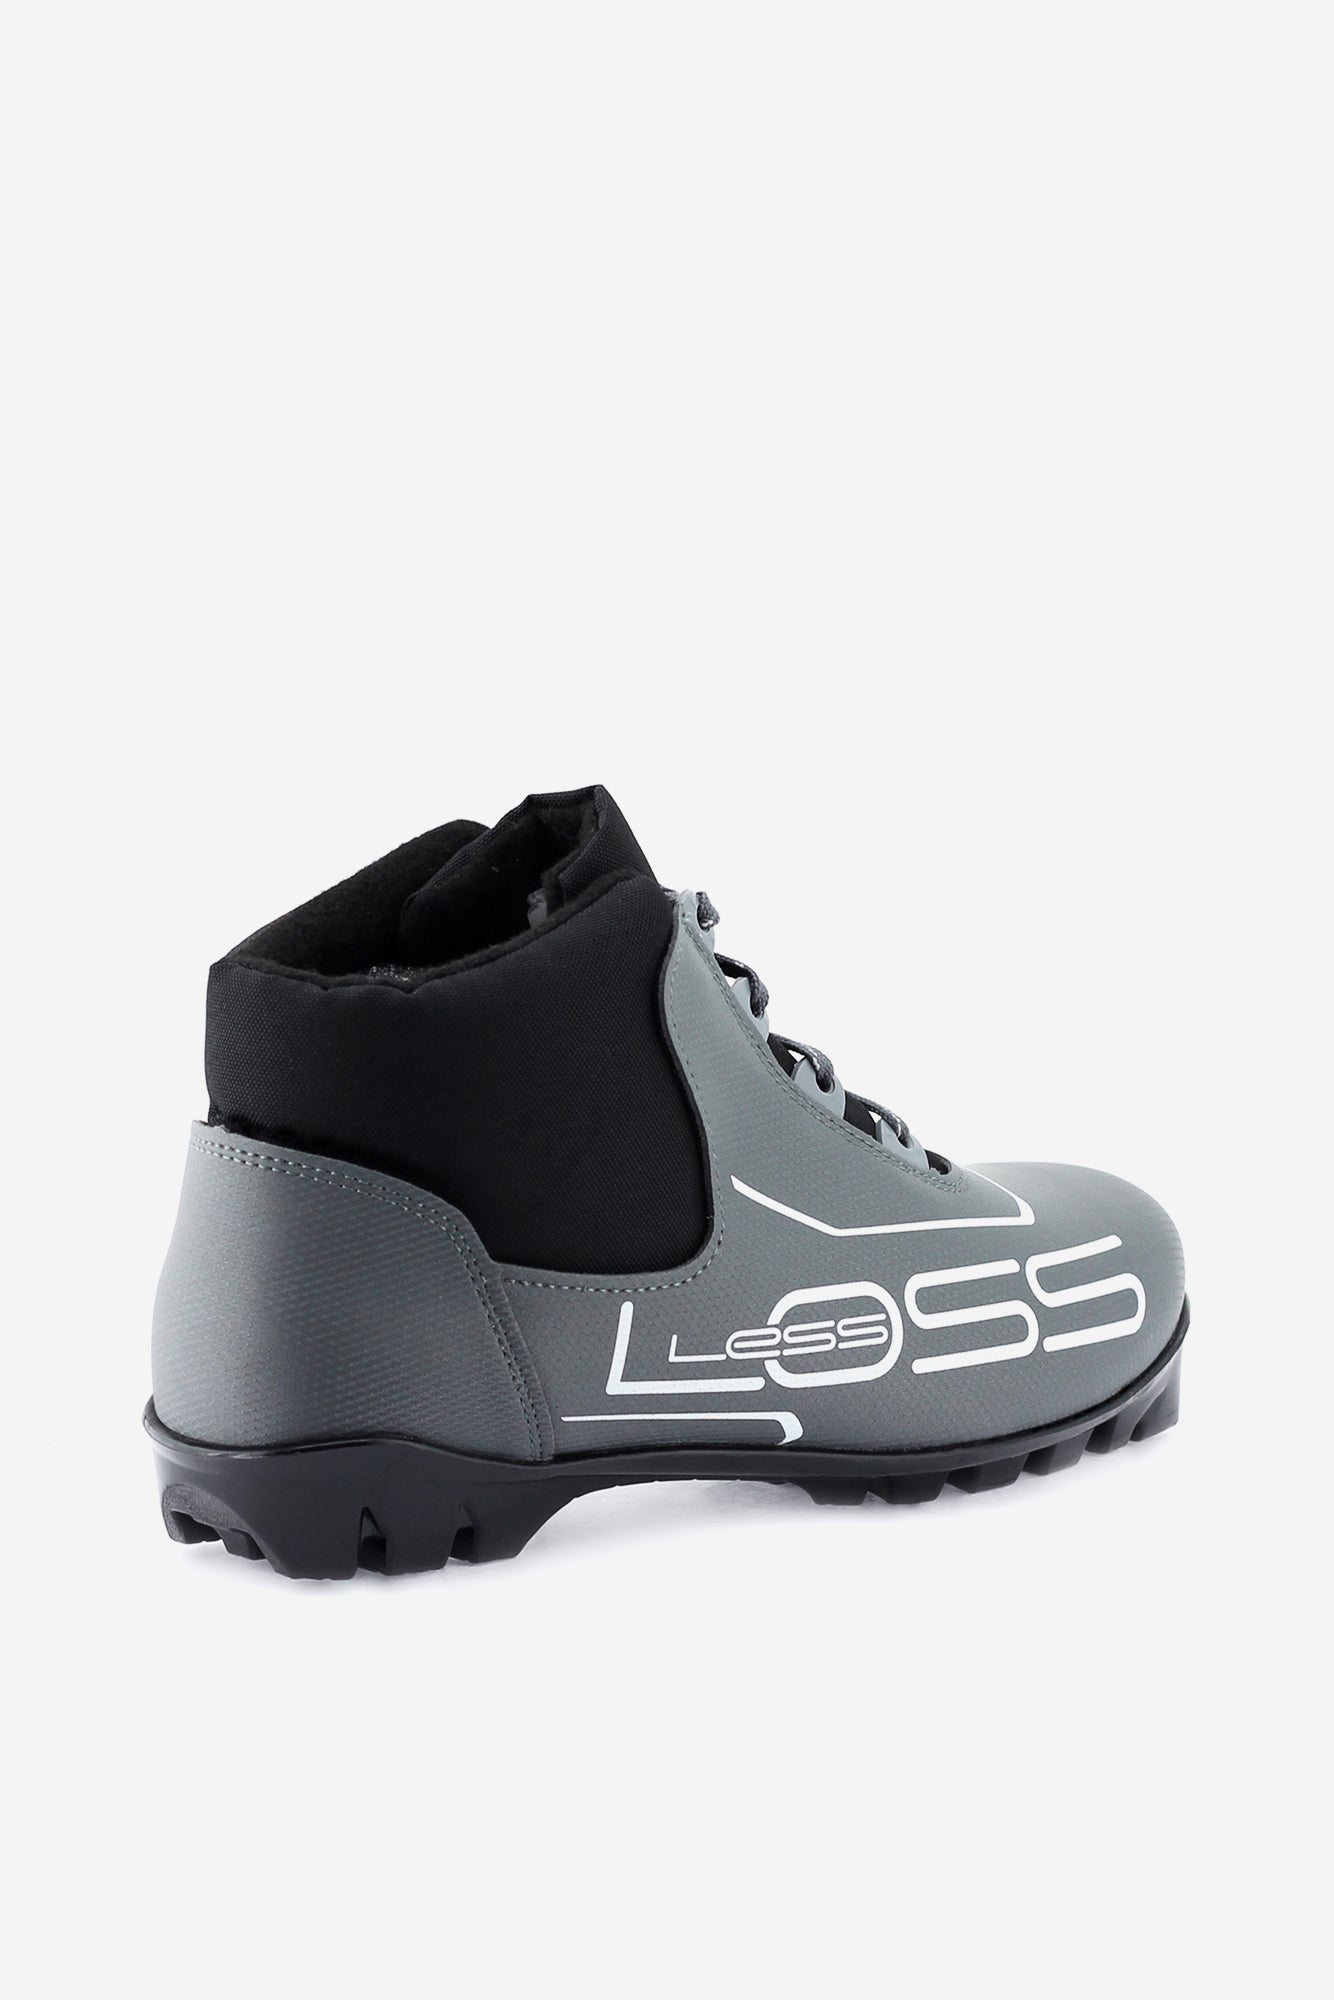 Loss 243 (NNN) Nordic Ski Boots Angle 1